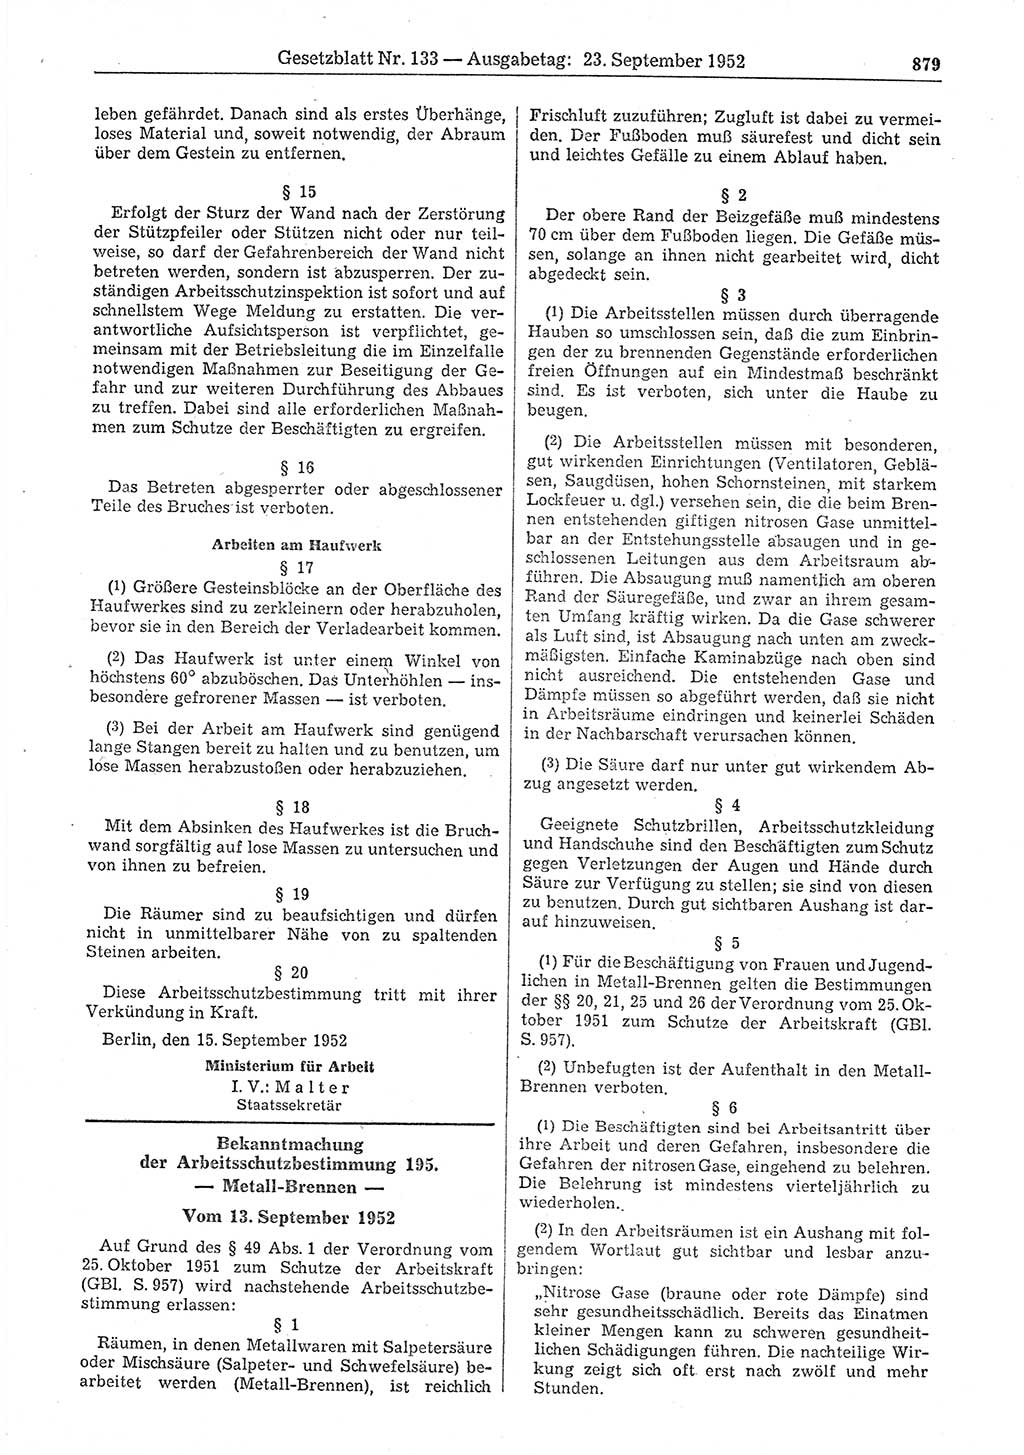 Gesetzblatt (GBl.) der Deutschen Demokratischen Republik (DDR) 1952, Seite 879 (GBl. DDR 1952, S. 879)